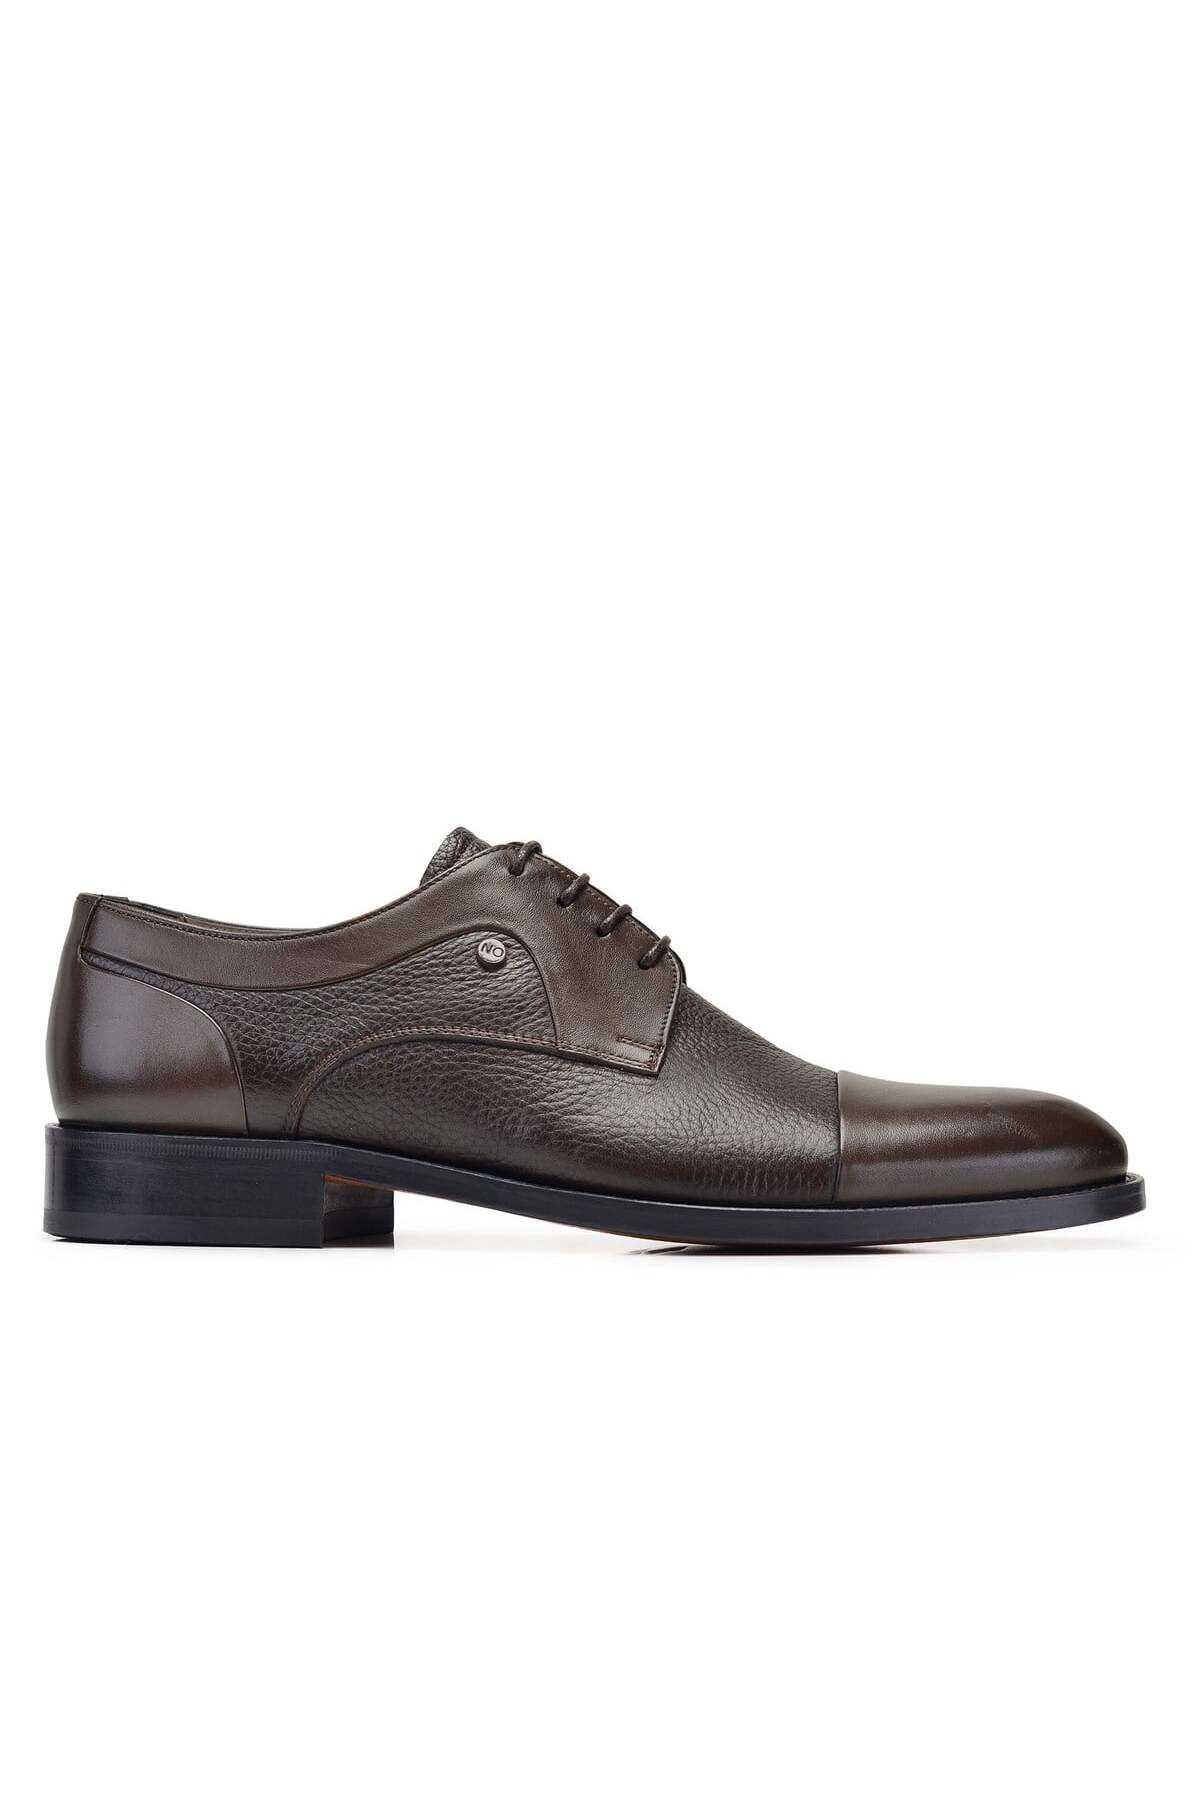 Nevzat Onay Kahverengi Klasik Bağcıklı Kösele Erkek Ayakkabı -10340-